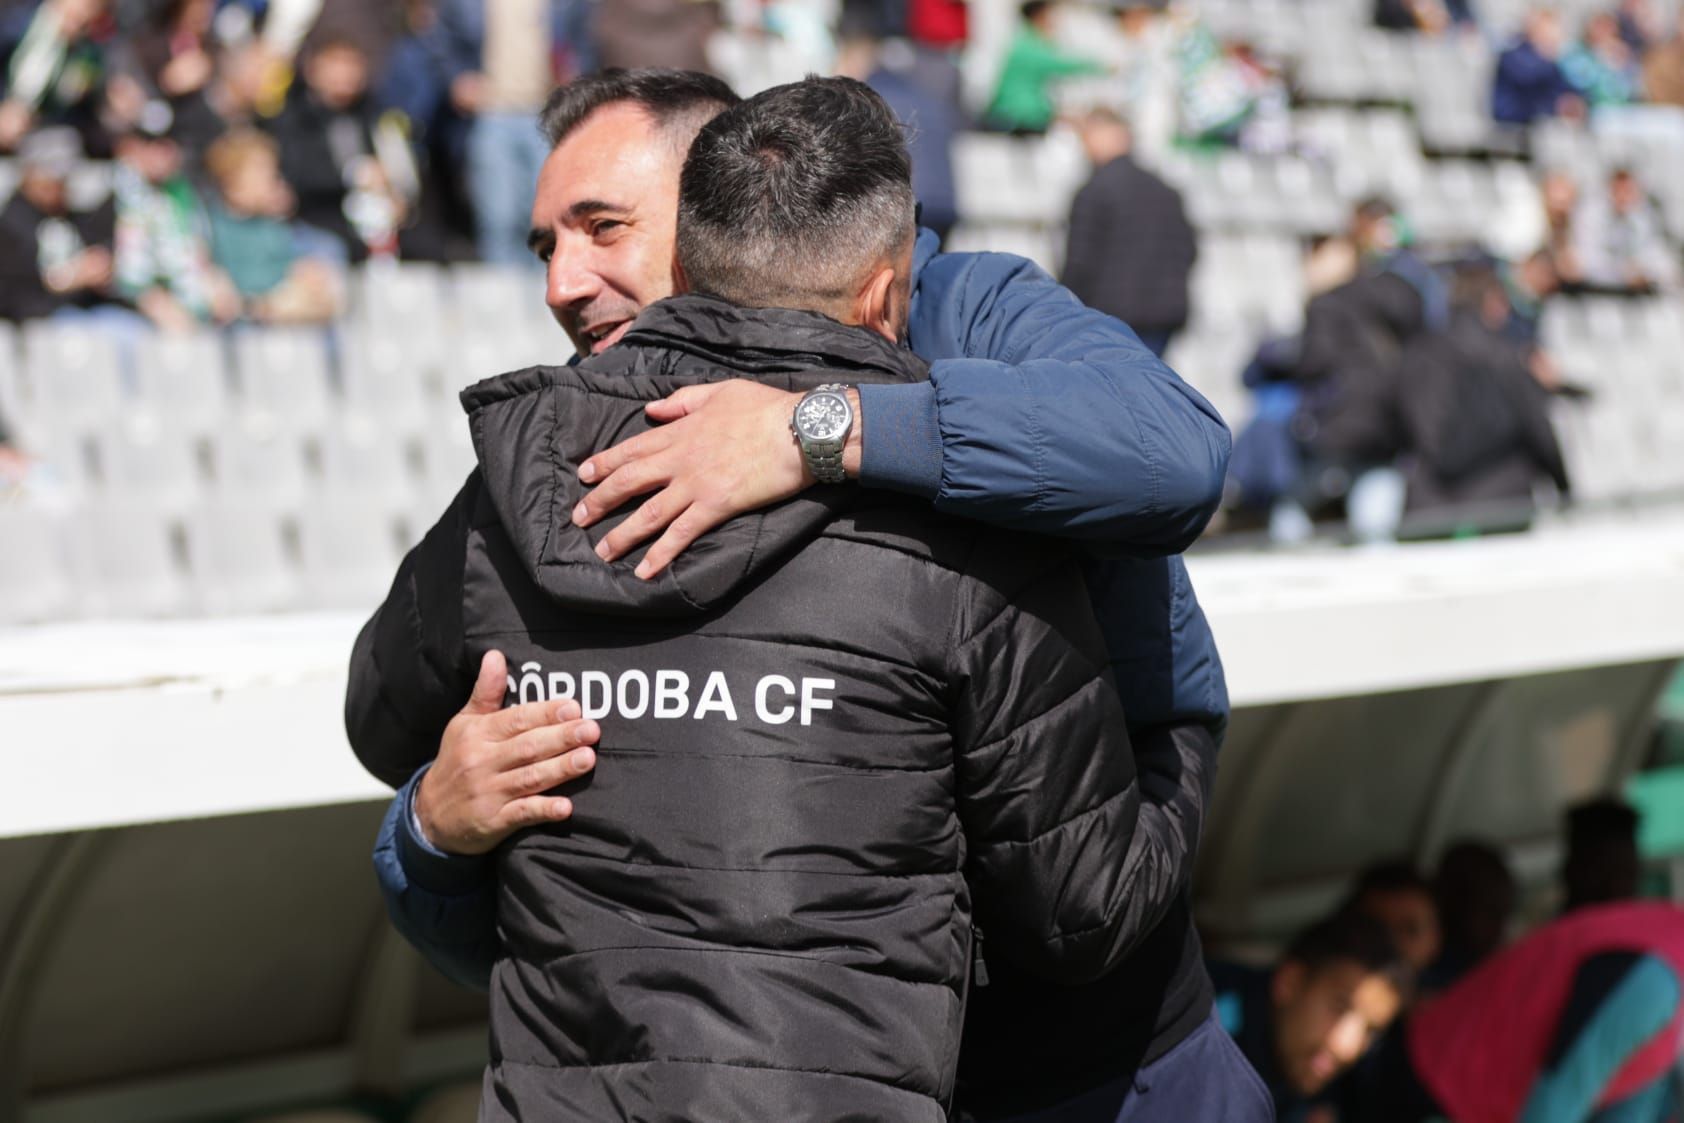 Córdoba CF-Atlético Baleares: las imágenes del partido en El Arcángel